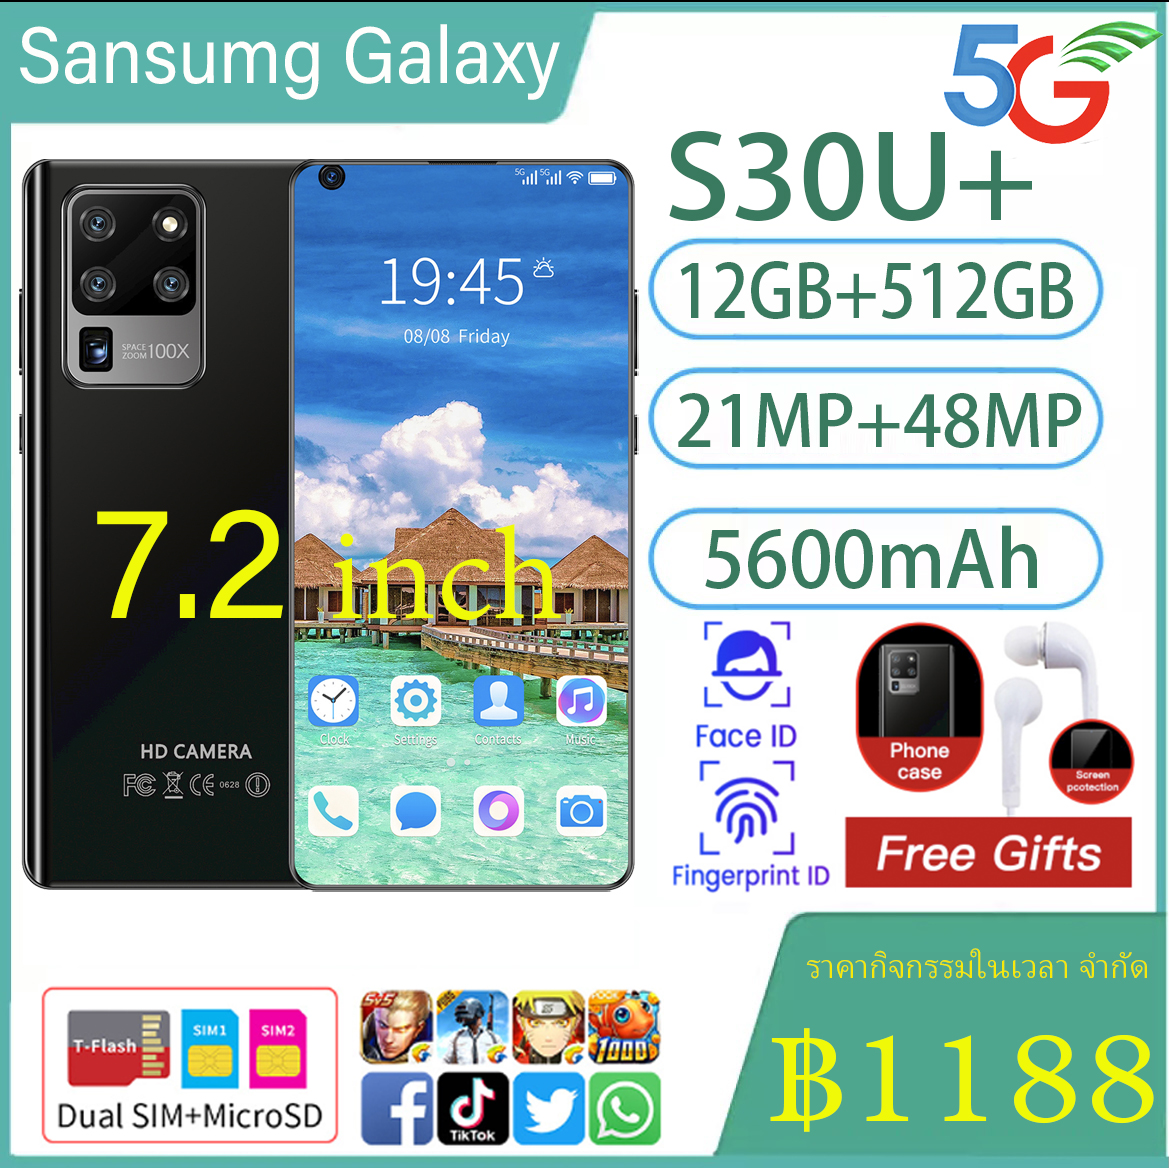 มือถือราคาถูก Sansumg Galaxy S30u + มือถือสมาร์ทโฟนจอใหญ่ 7.2 นิ้ว RAM12G Rom512GB หน่วยความจำใหญ่รองรับ 5G จริง Android 10 สแกนลายนิ้วมือปลดล็อคใบหน้าสเปคจริง / ราคาถูกมือถือของแท้ส่งฟรีทั่วไทย